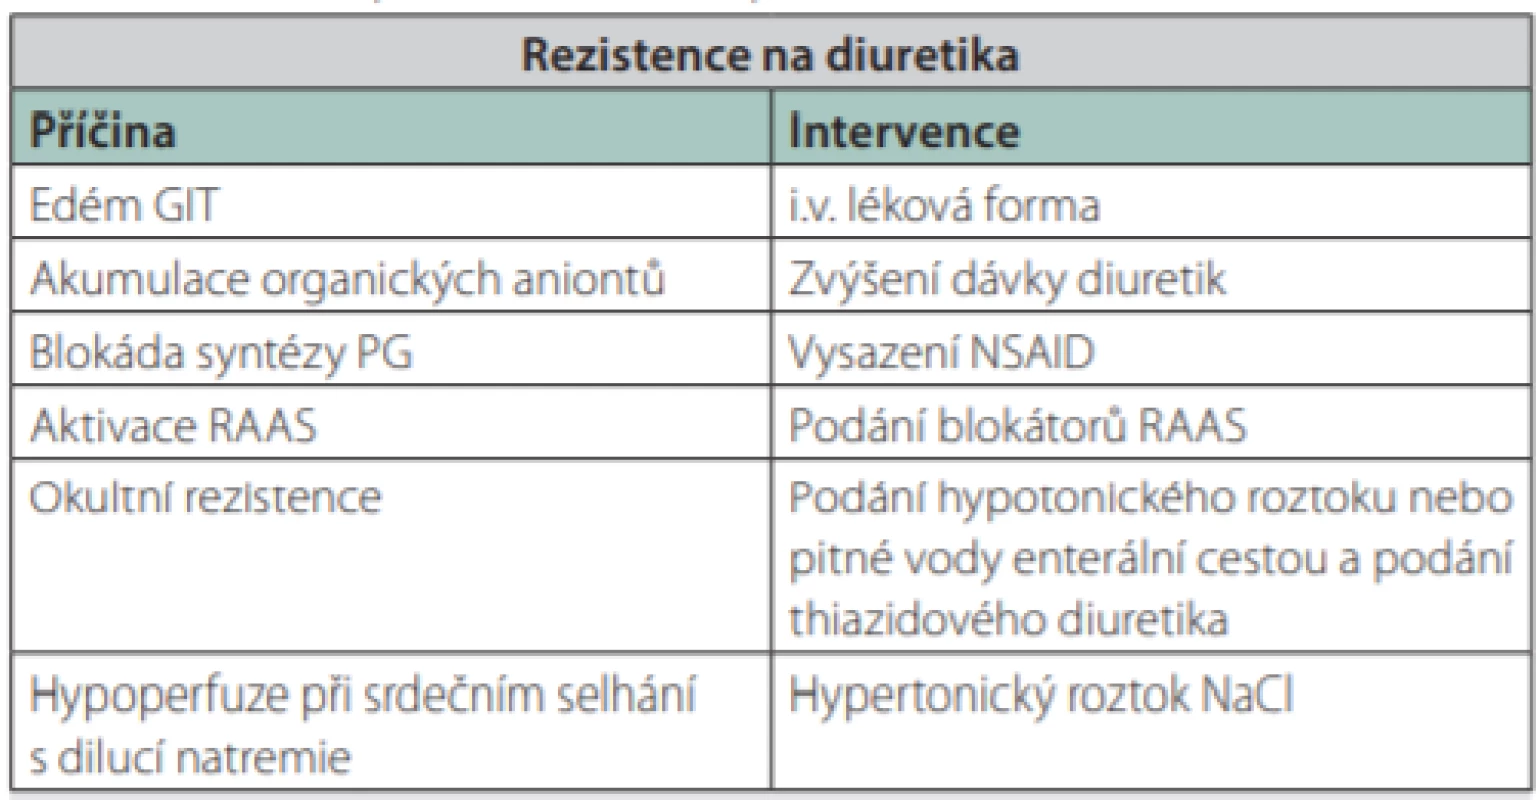 Přehled příčin a intervencí při rezistenci na diuretika